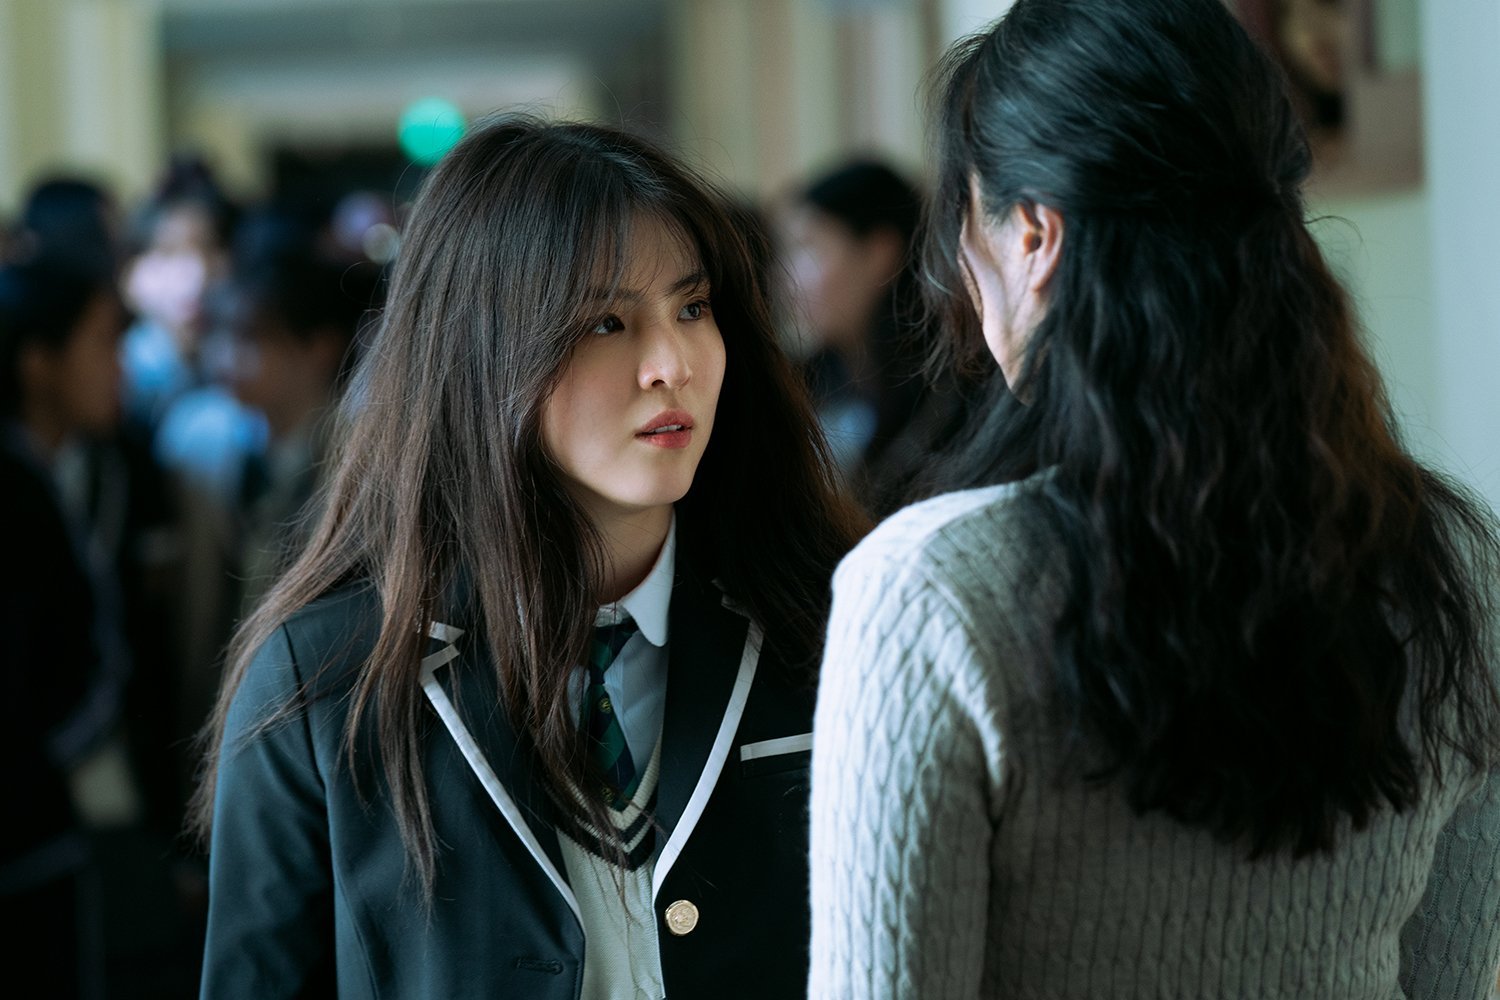 Han So-hee as Yoon Ji-woo in episode 1 of 'My Name' wearing school uniform.